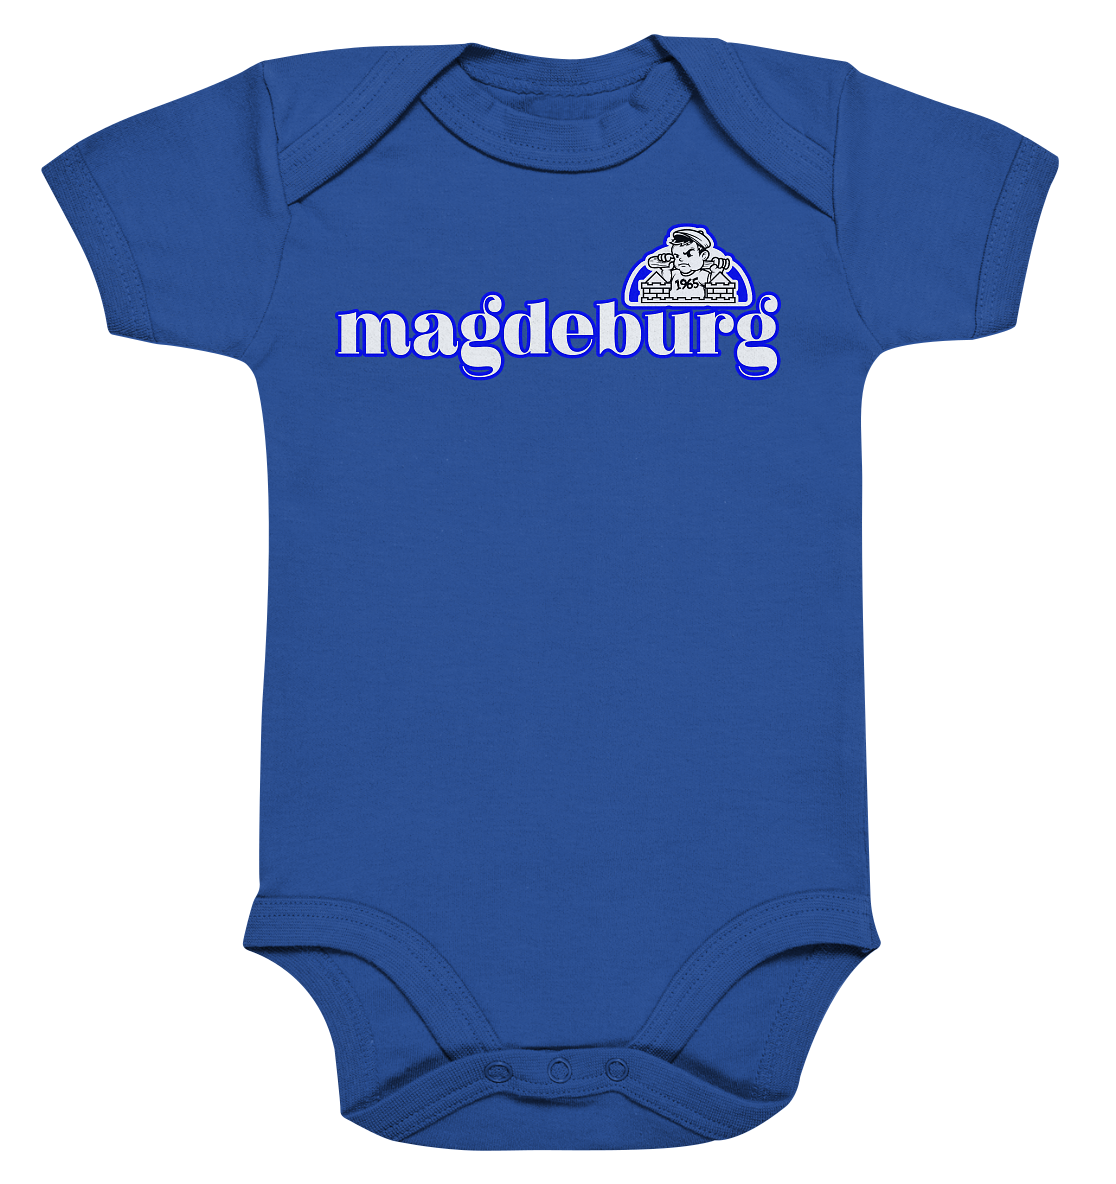 Magdeburger - Organic Baby Bodysuite